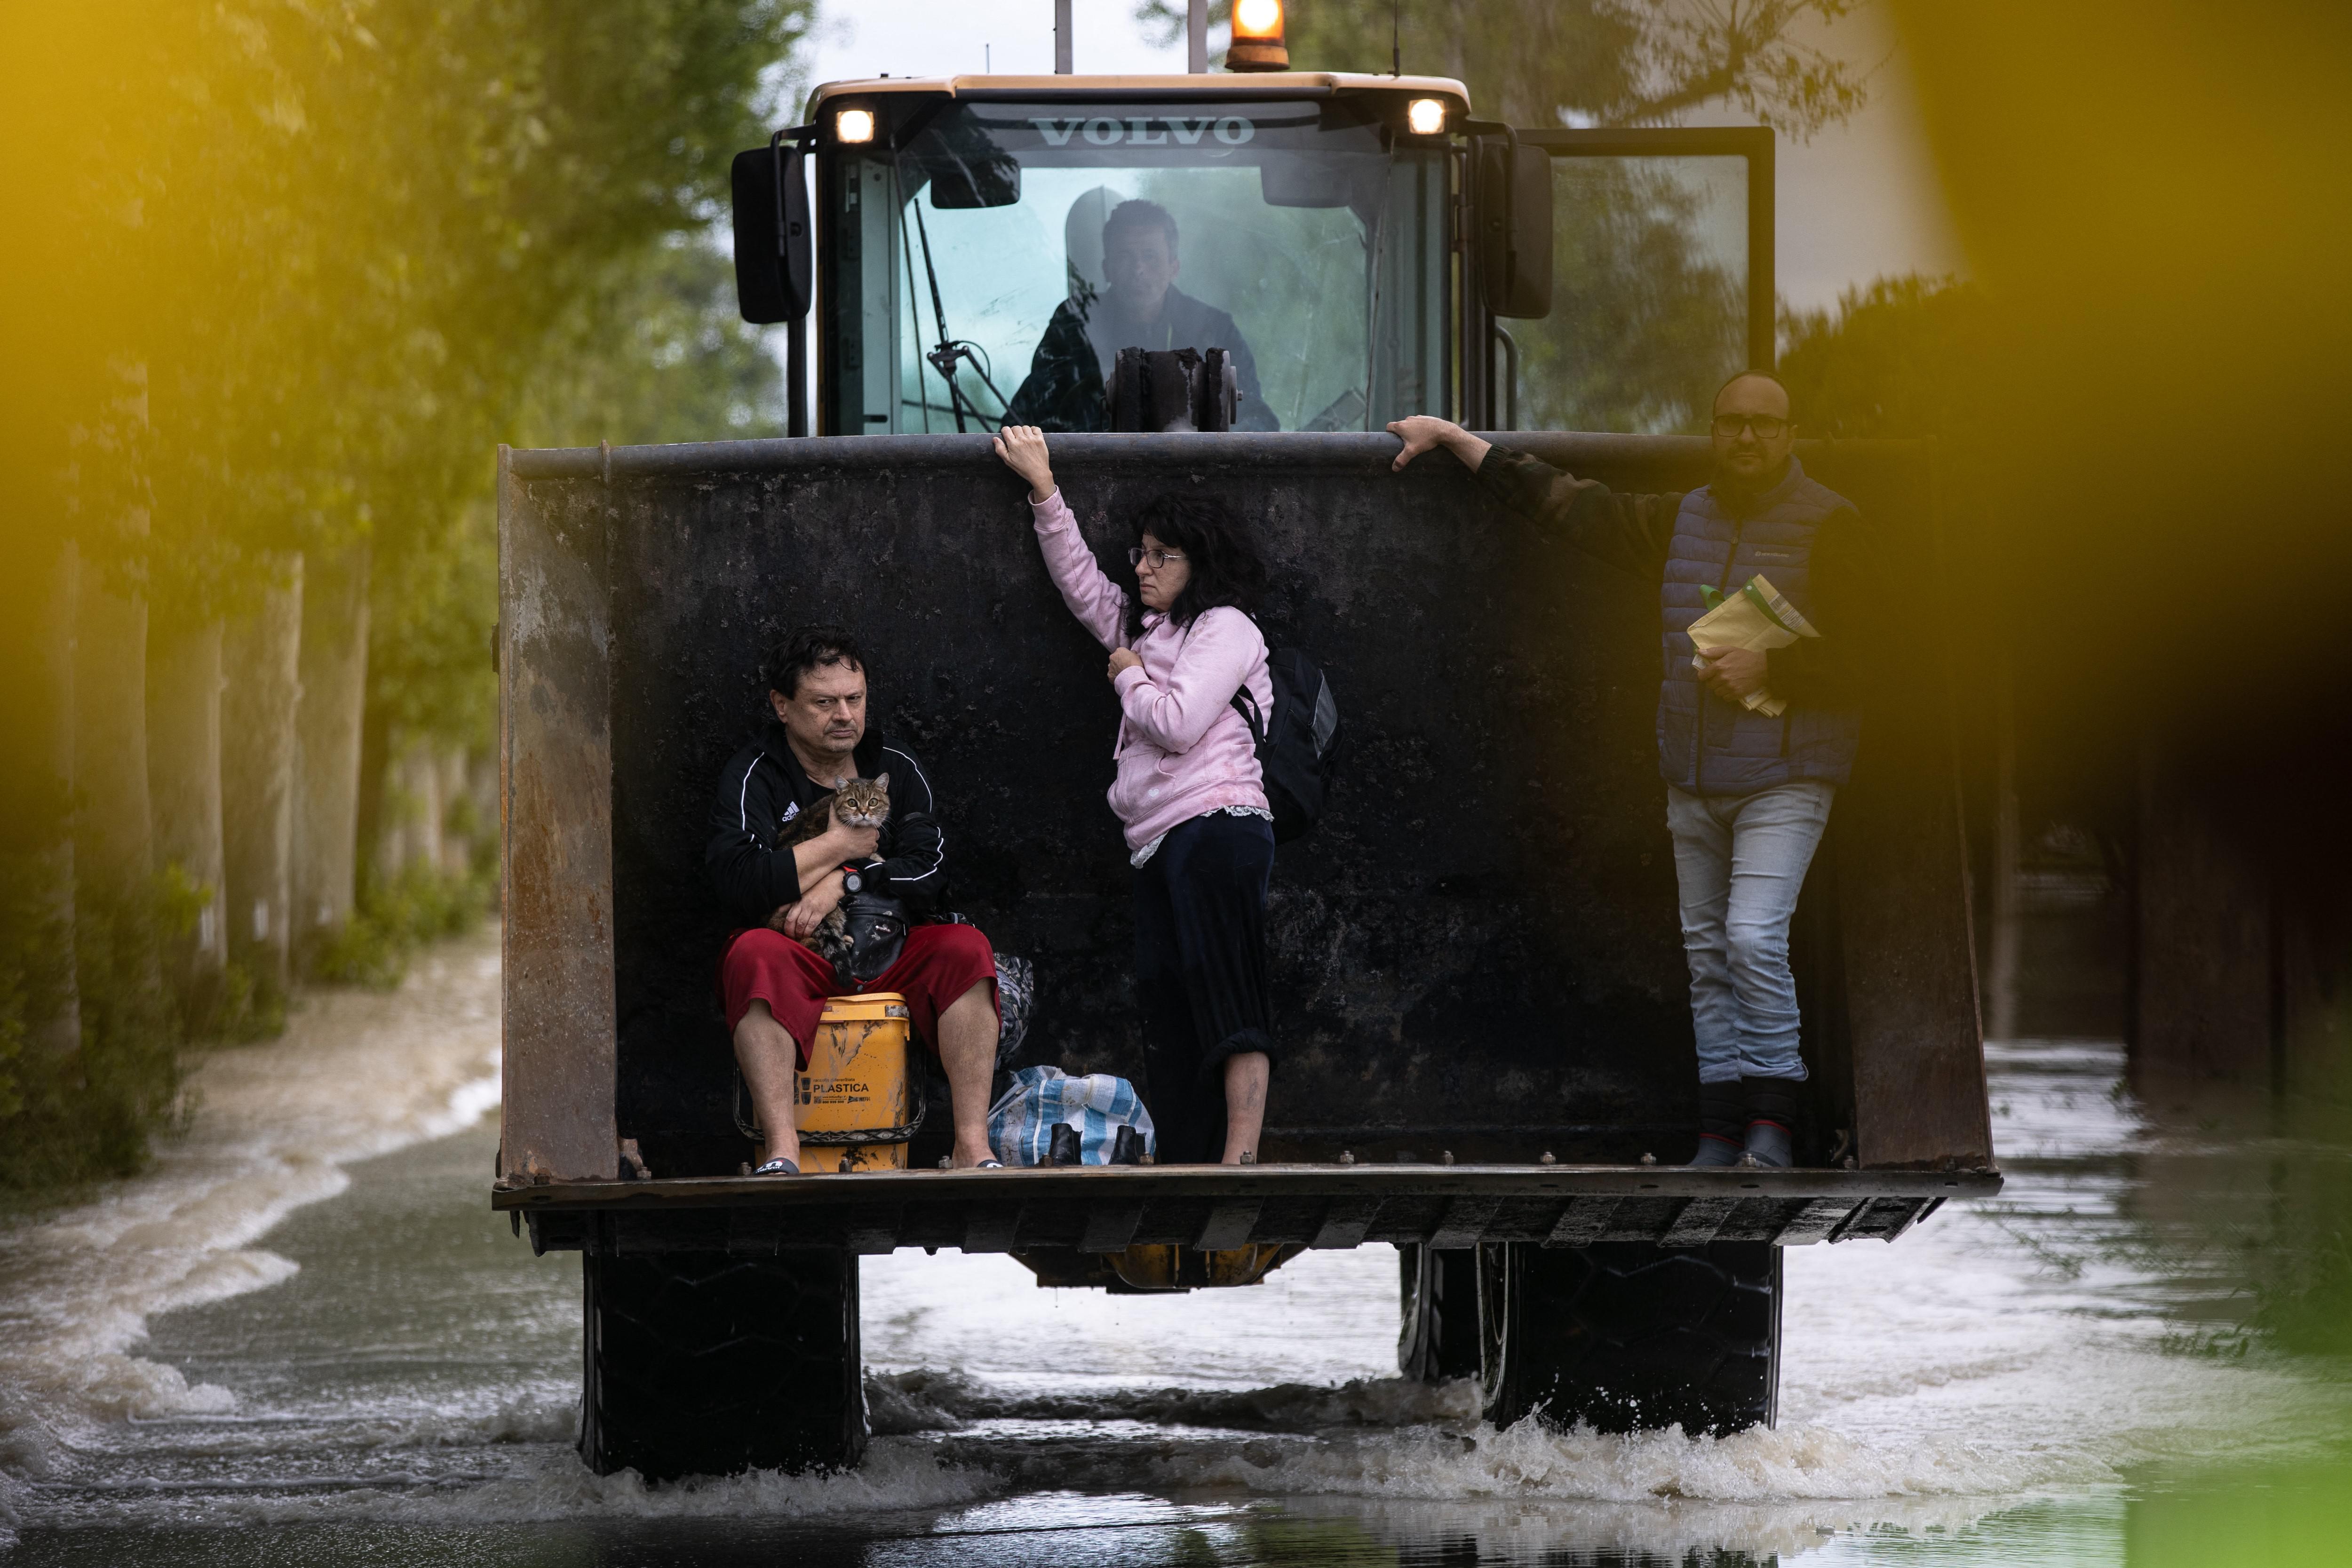 Alluvione Emilia Romagna, anche oggi allerta rossa e scuole chiuse